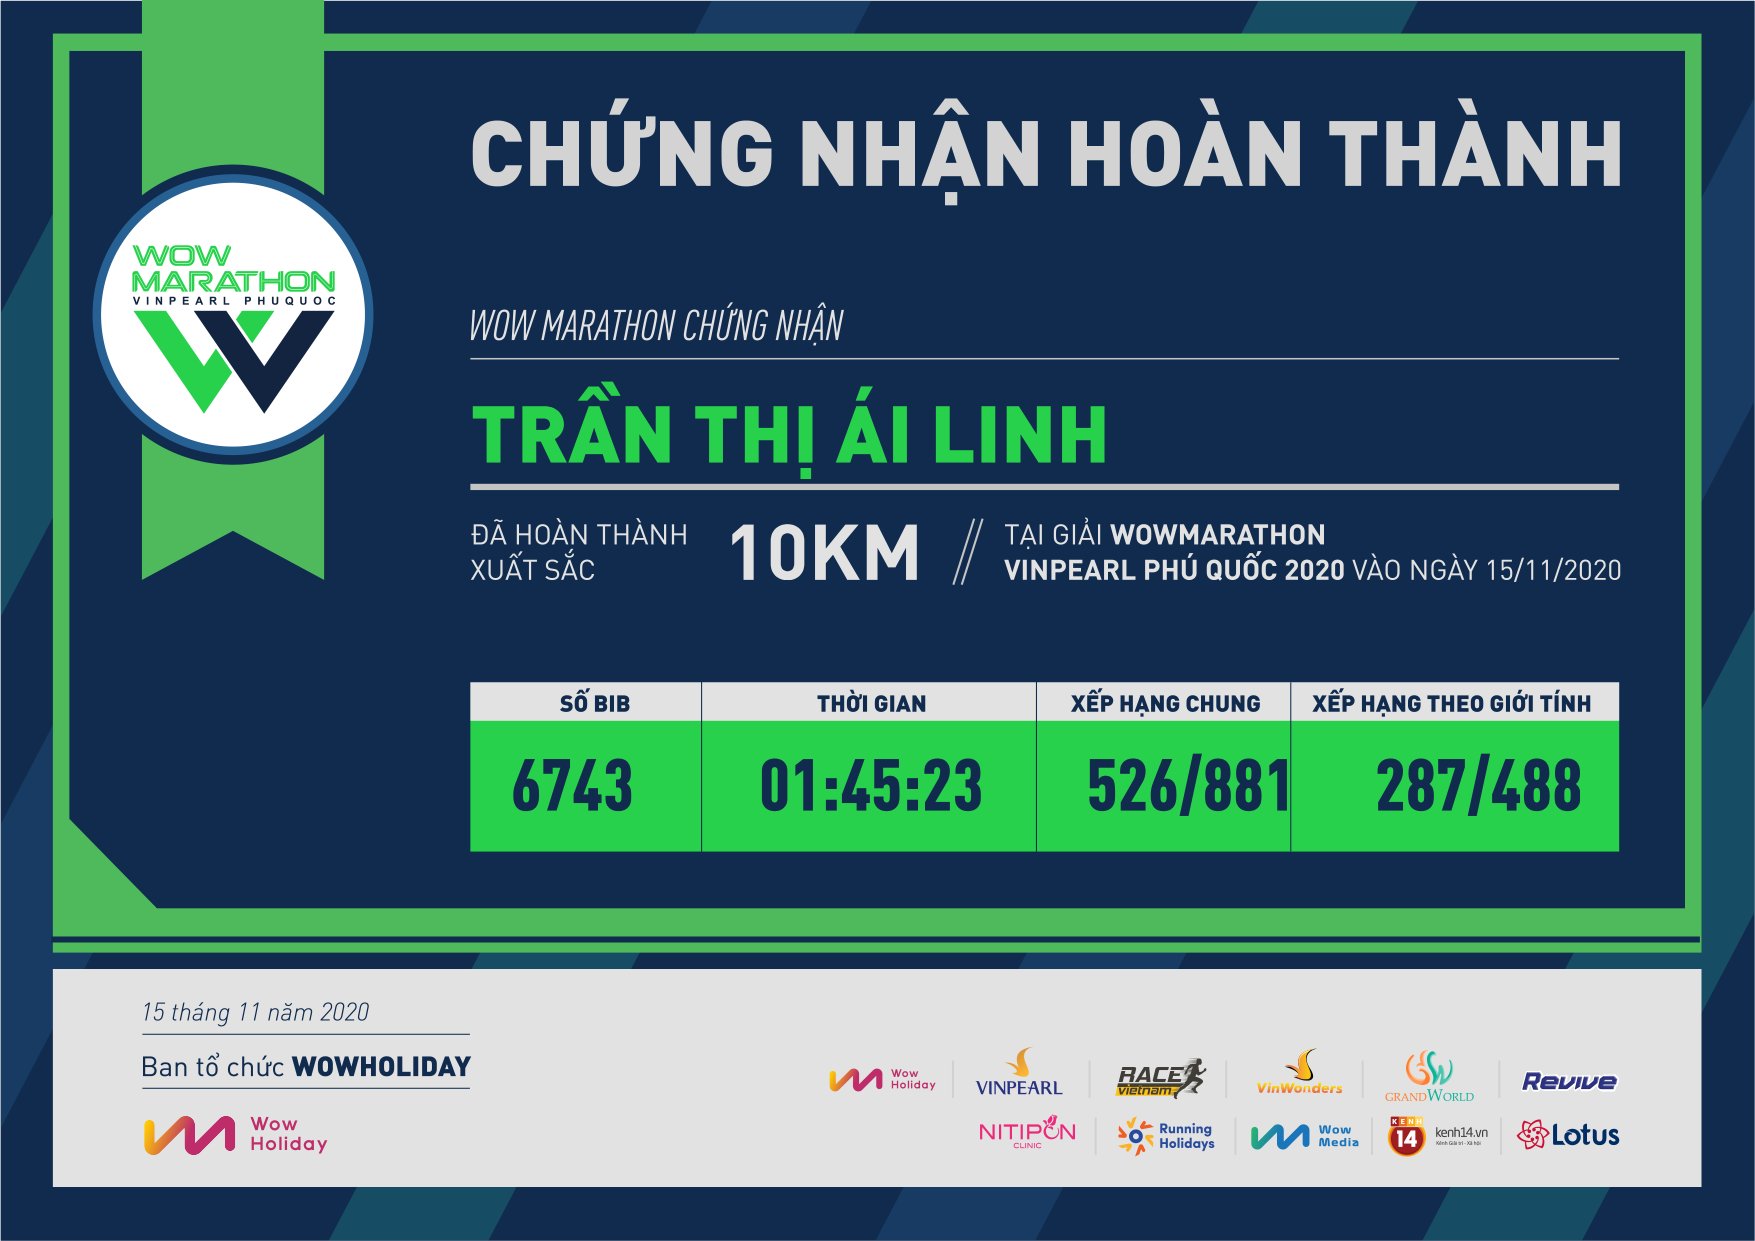 6743 - Trần Thị Ái Linh